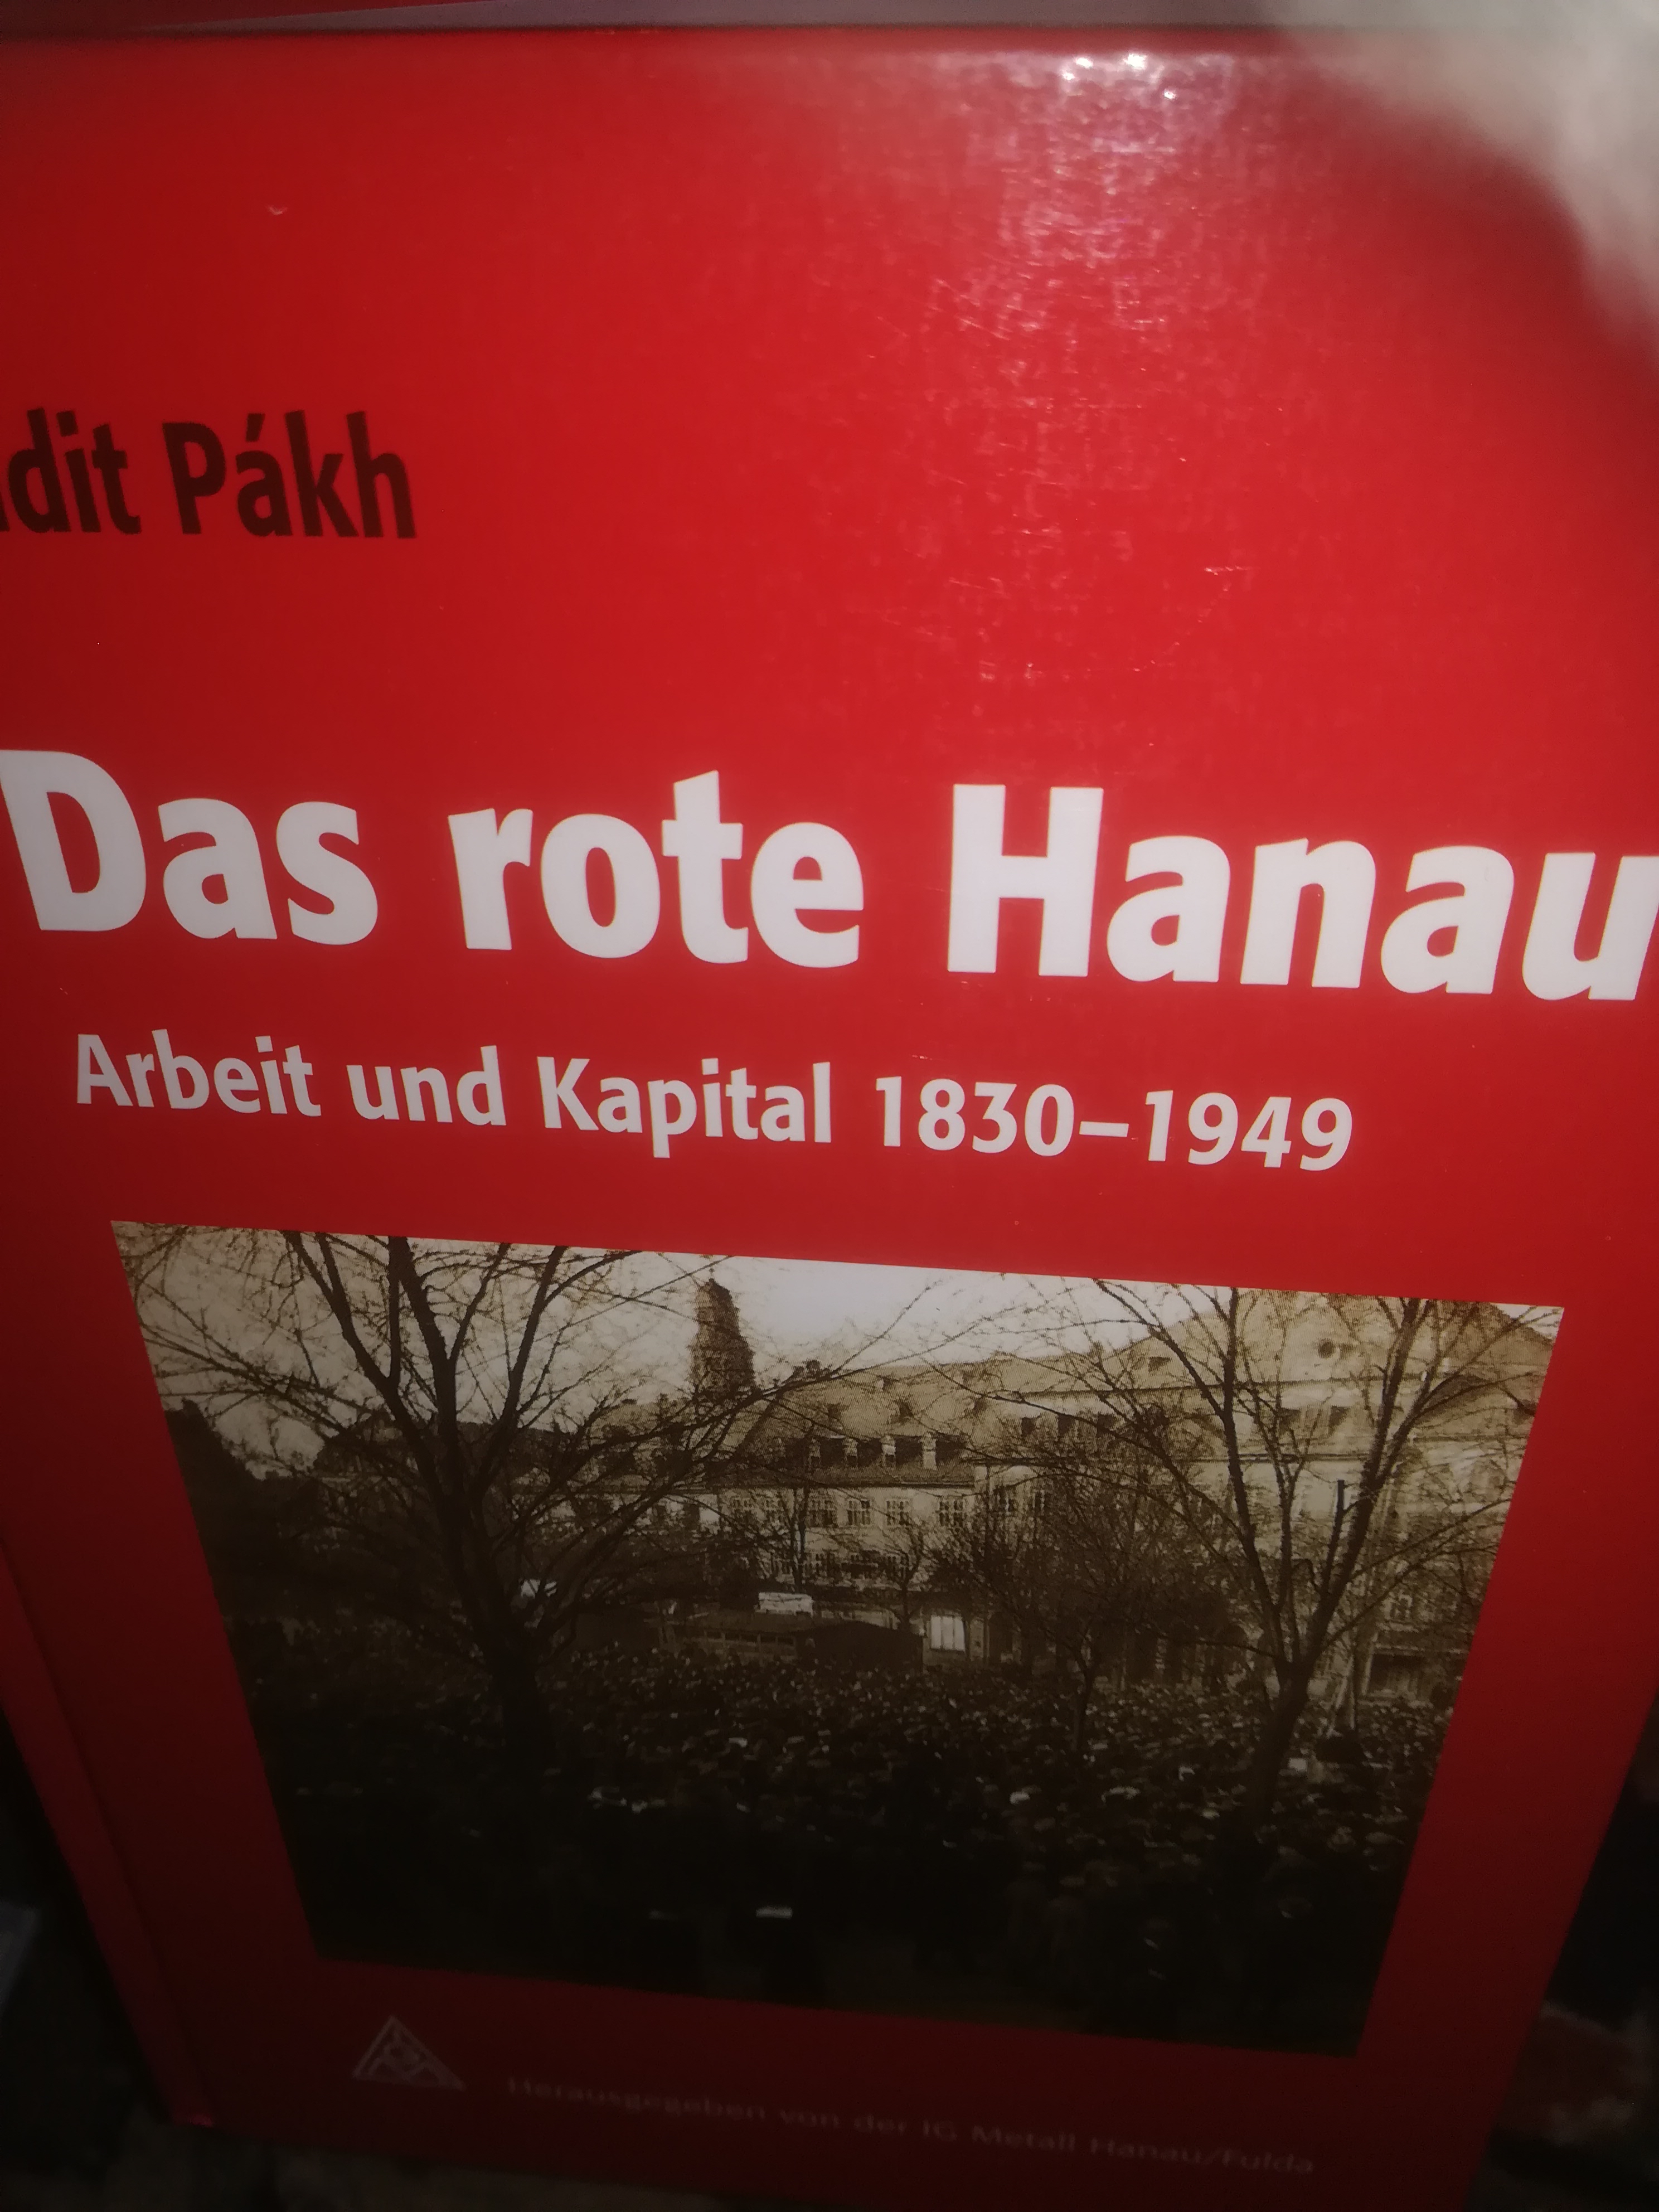 Das rote Hanau, Arbeit und Kapital 1830-1949, Darstellung und Dokumente, herausgegeben von der IG Metall Hanau, Fulda - Pakh Judit